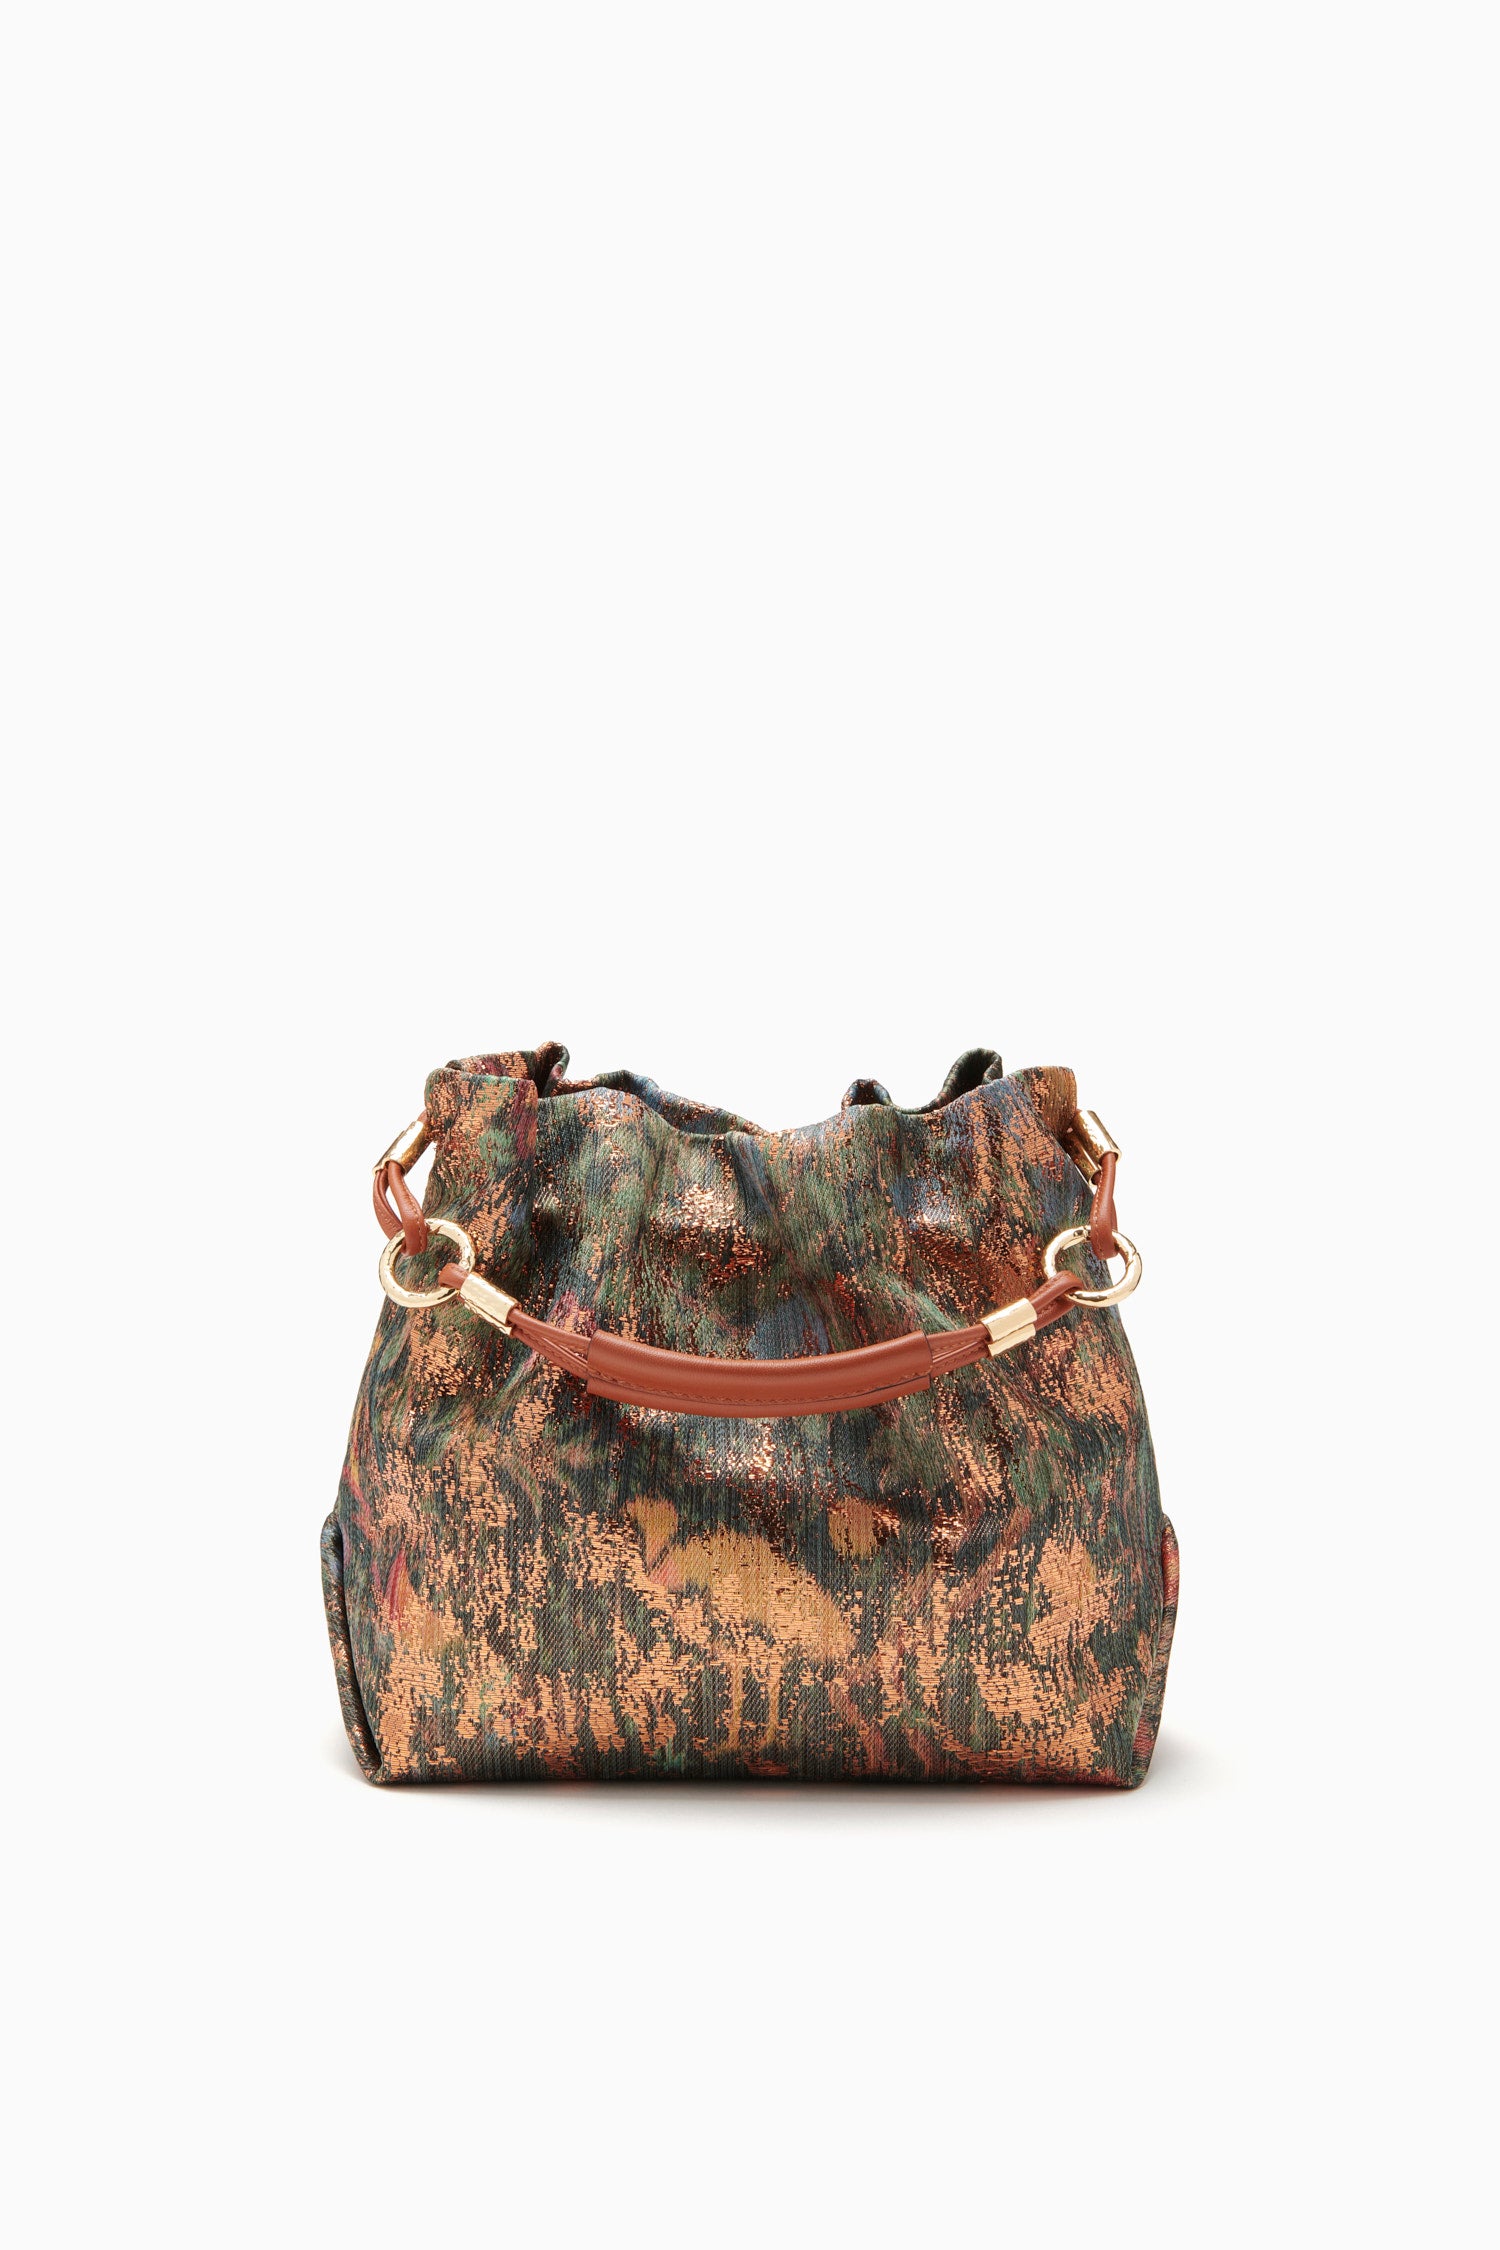 Where to find mink purse : r/Louisvuitton